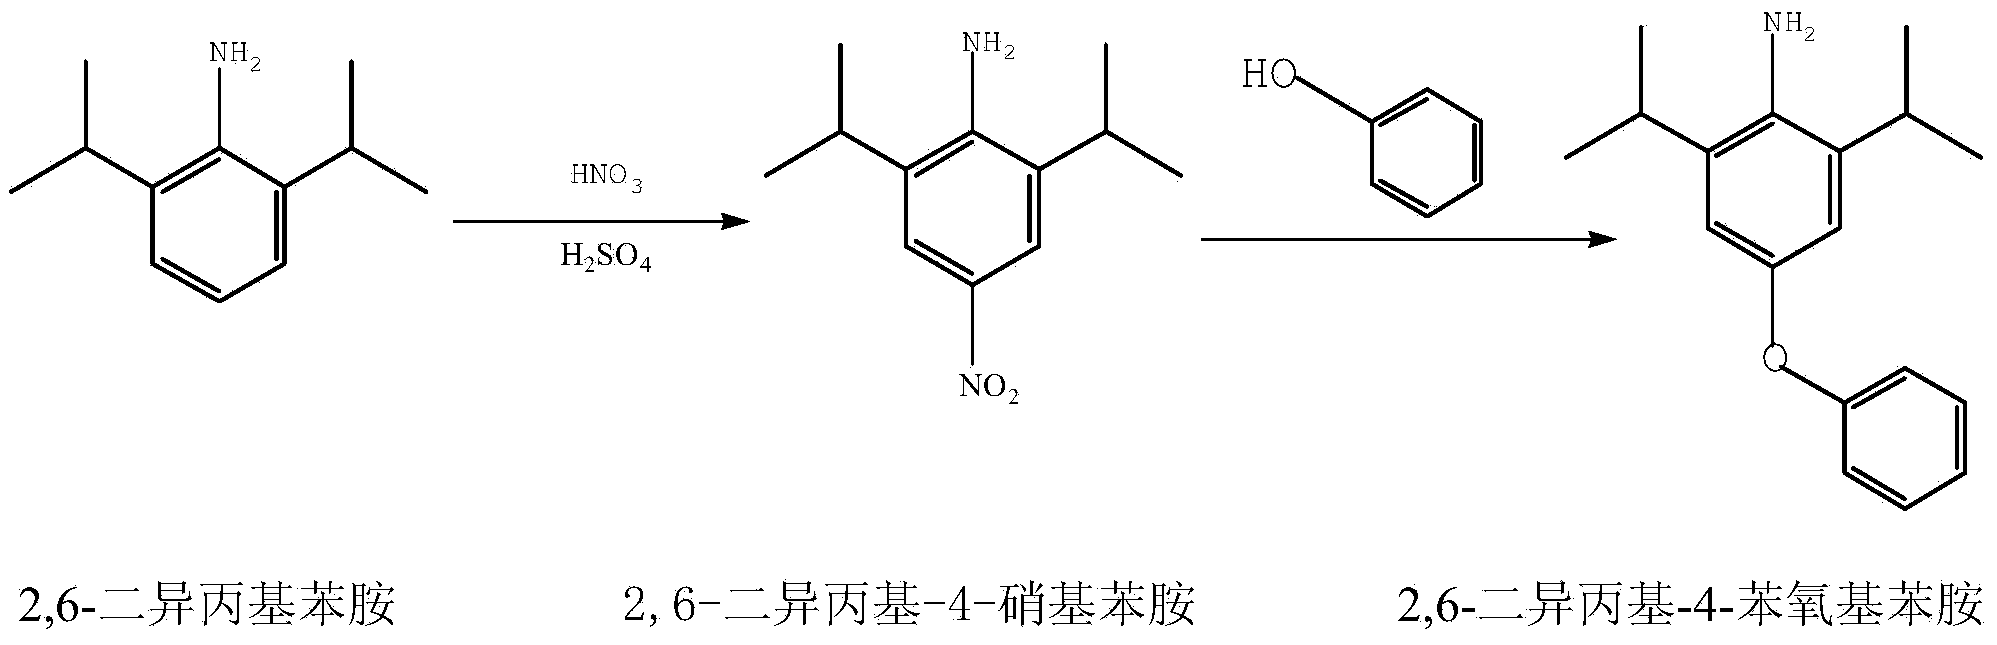 Synthetic method for 2,6-diisopropyl-4-phenoxy aniline